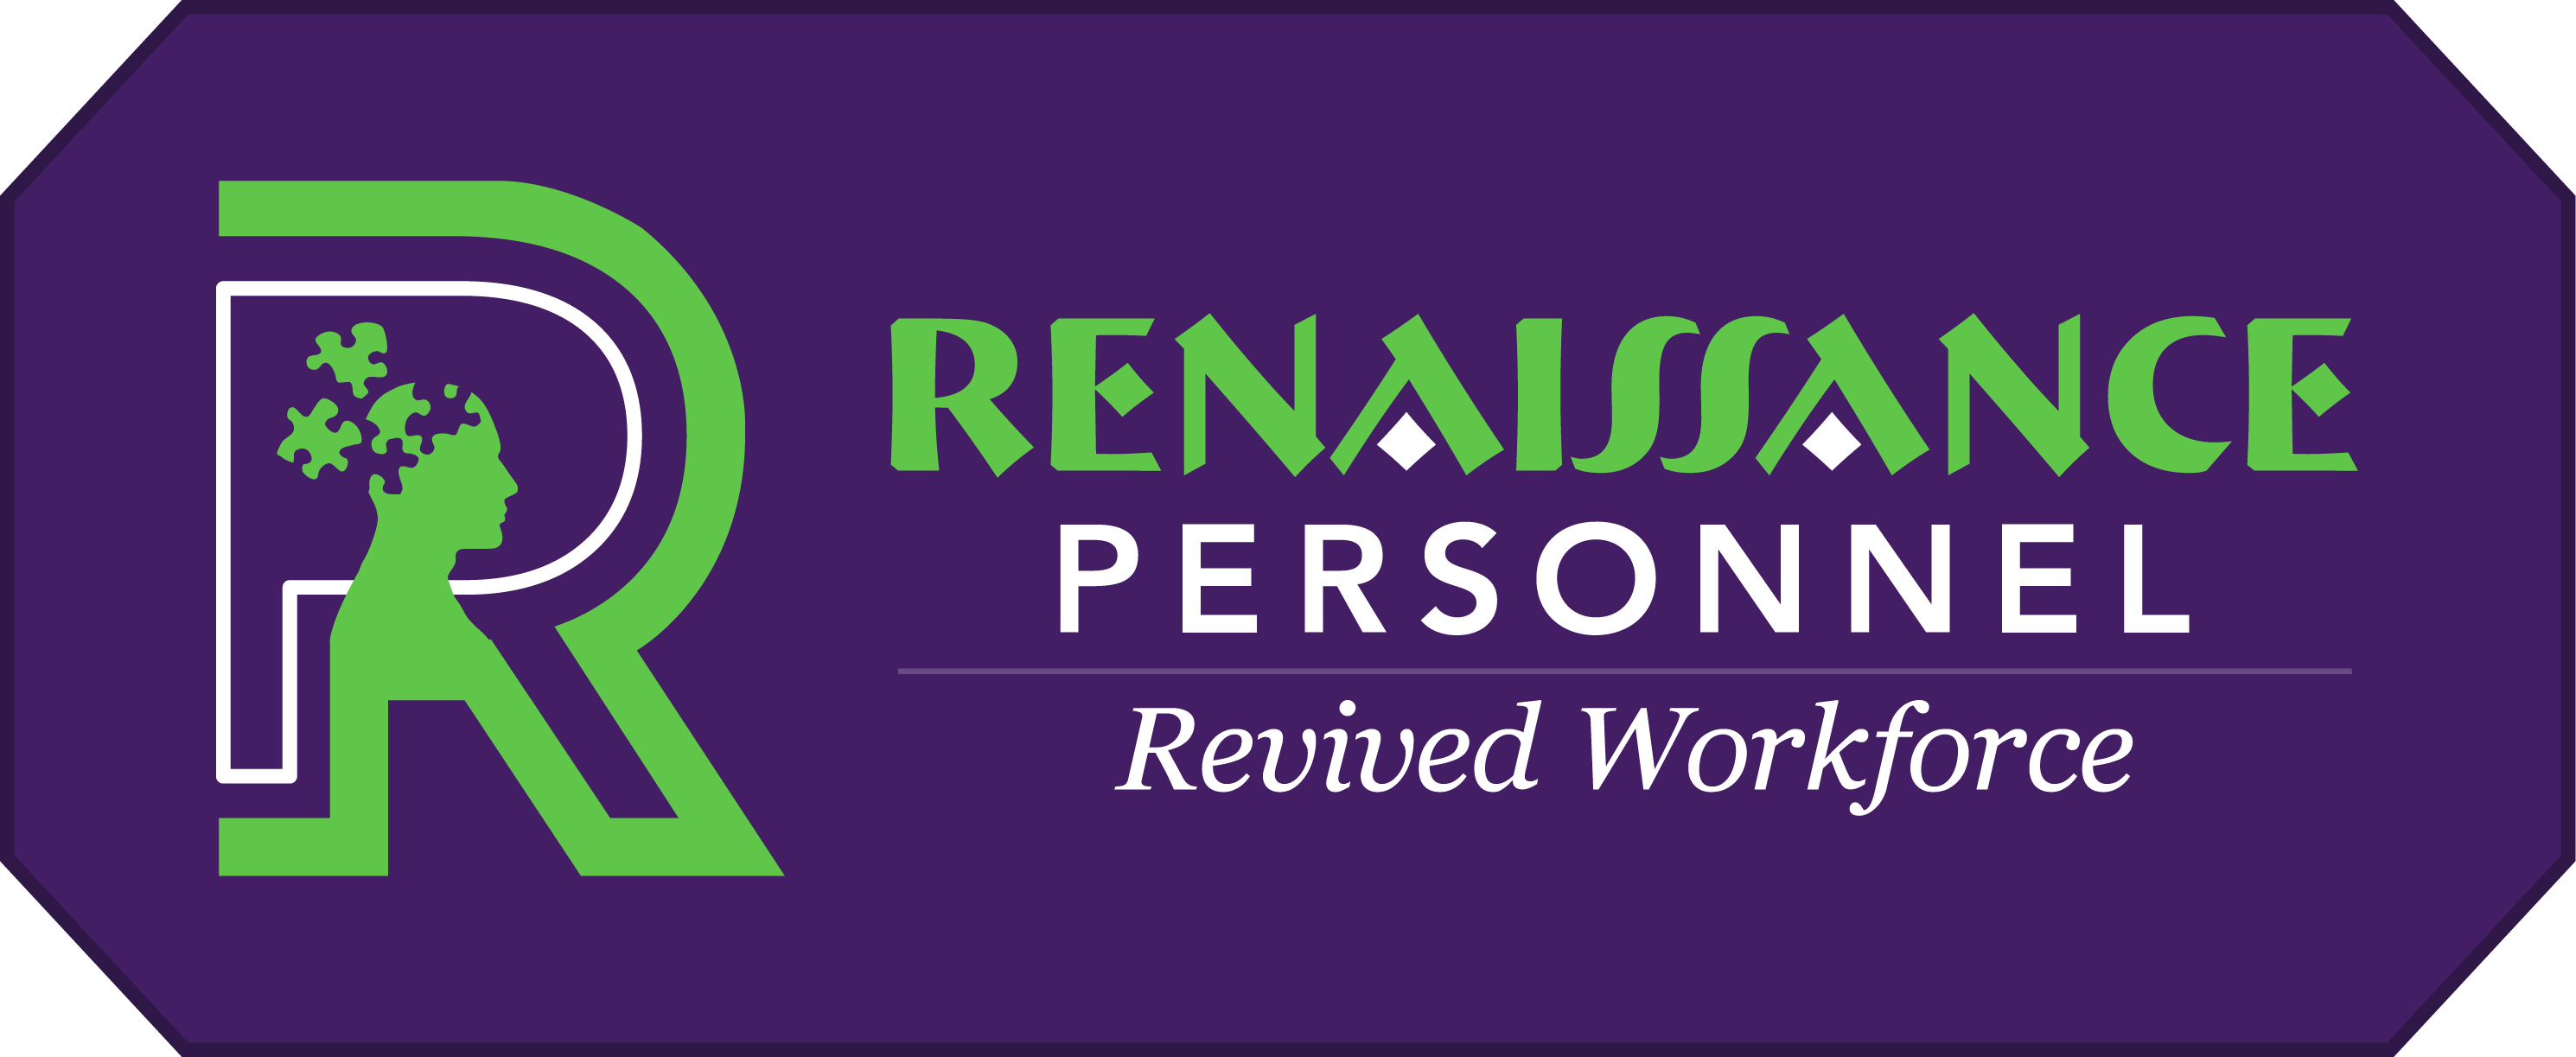 logo for Renaissance Personnel Ltd